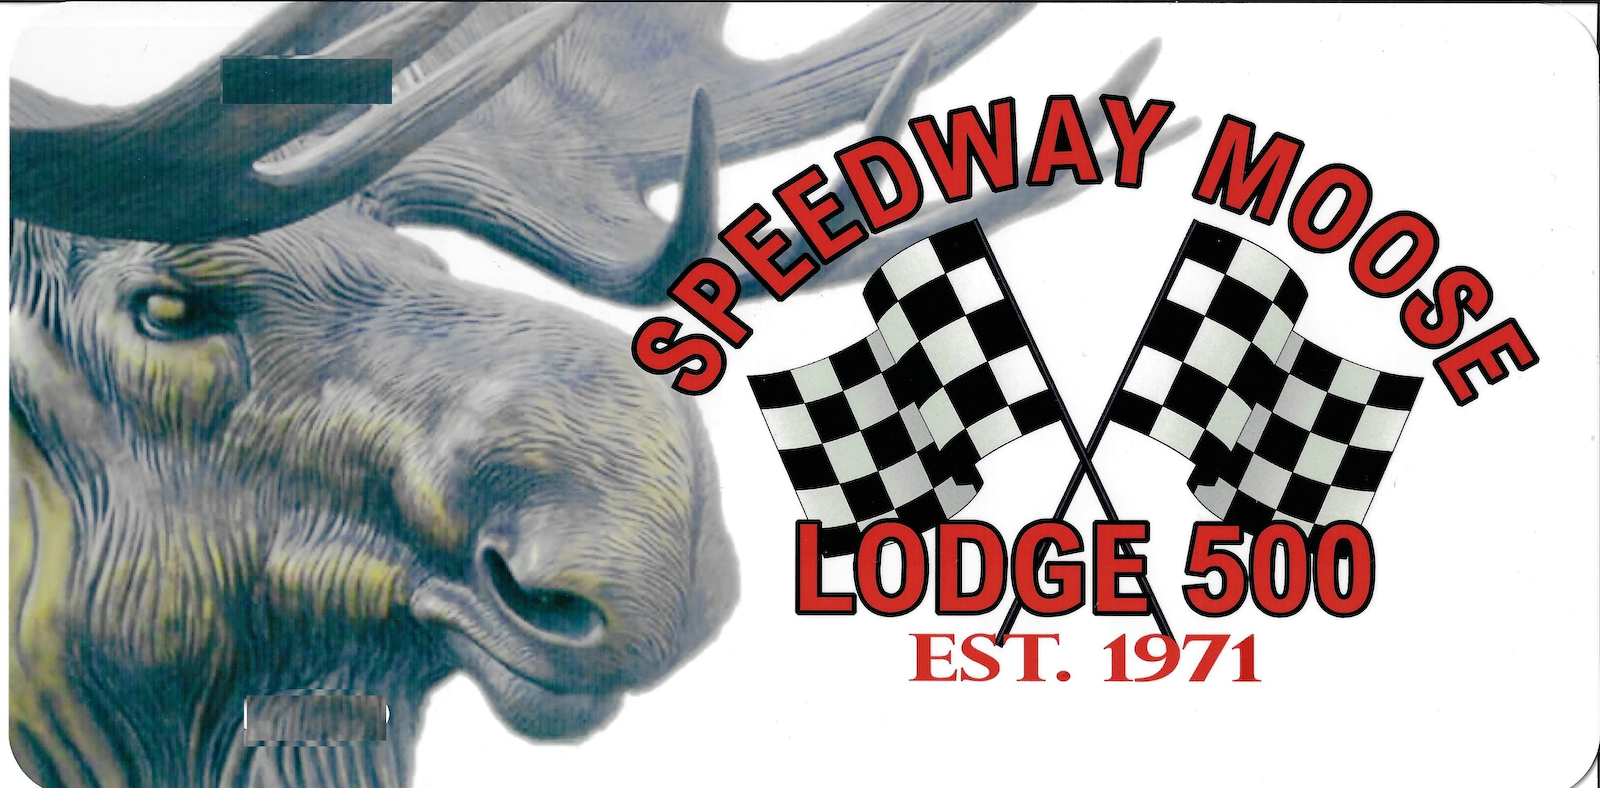 Speedway Moose Lodge 500